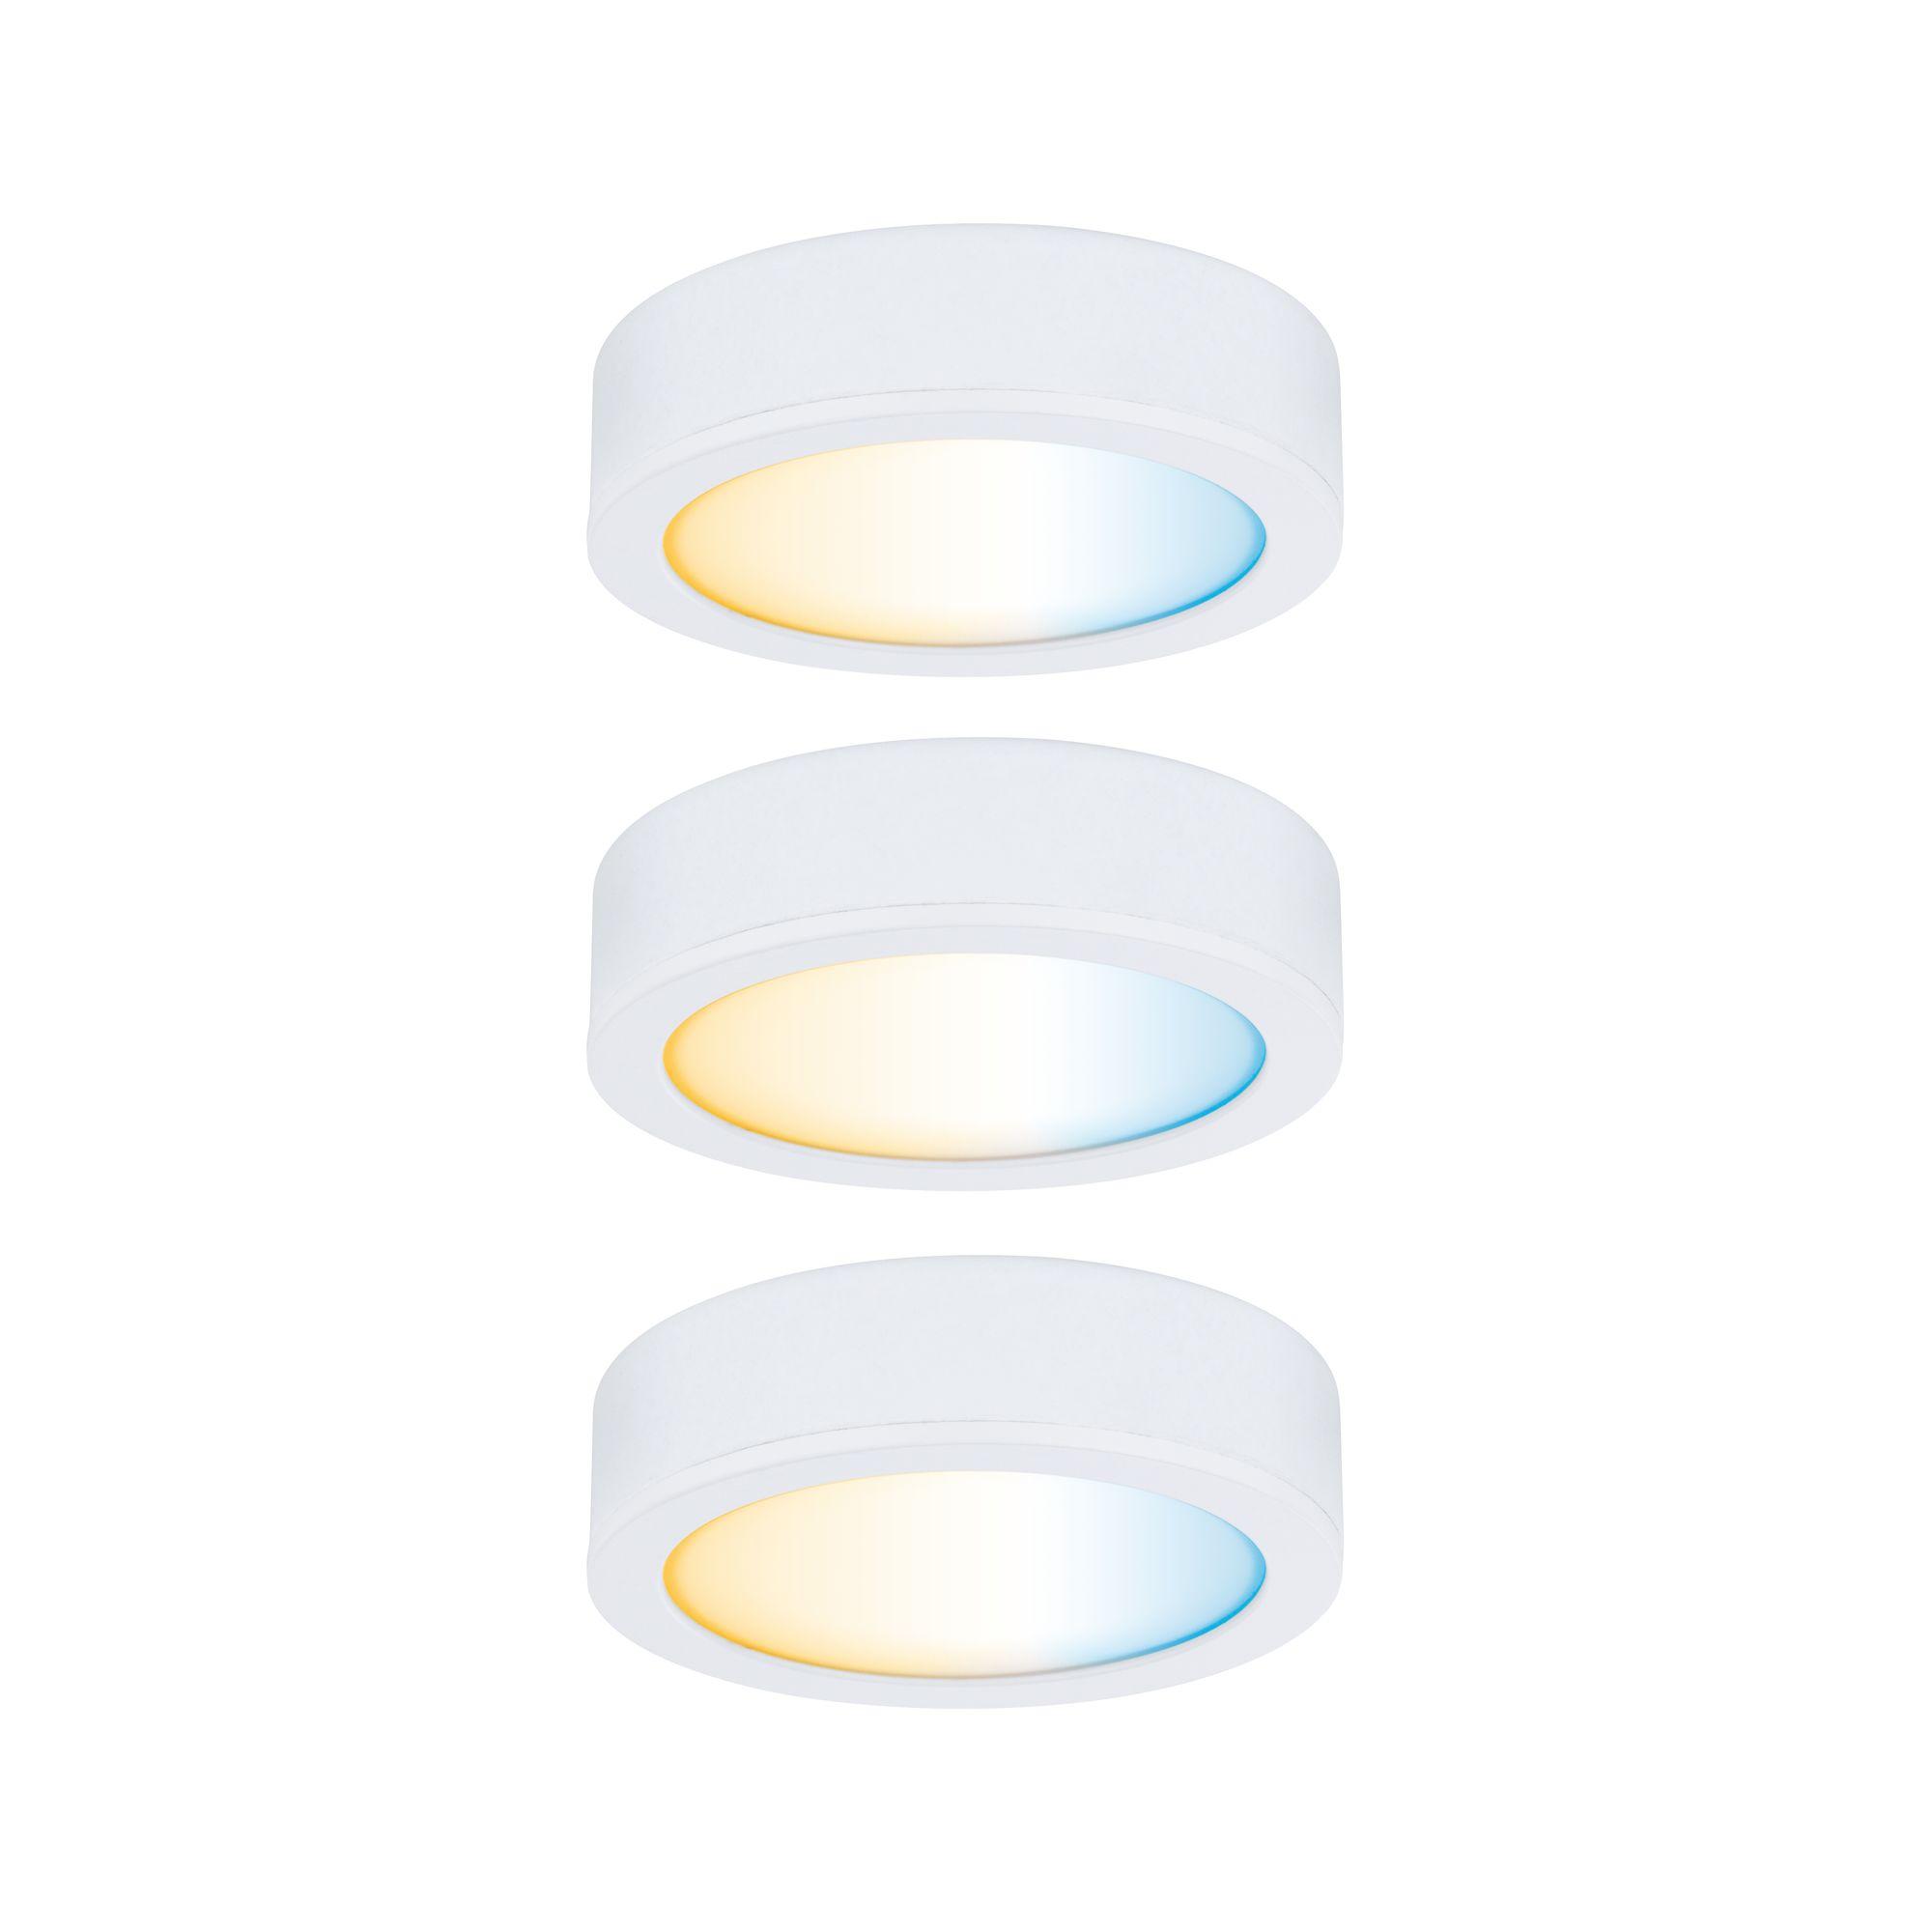 Nábytkové svítidlo Clever Connect startovací sada Disc bílá mat 12V 3x2,1W měnitelná bílá 2.700-6.500K - PAULMANN